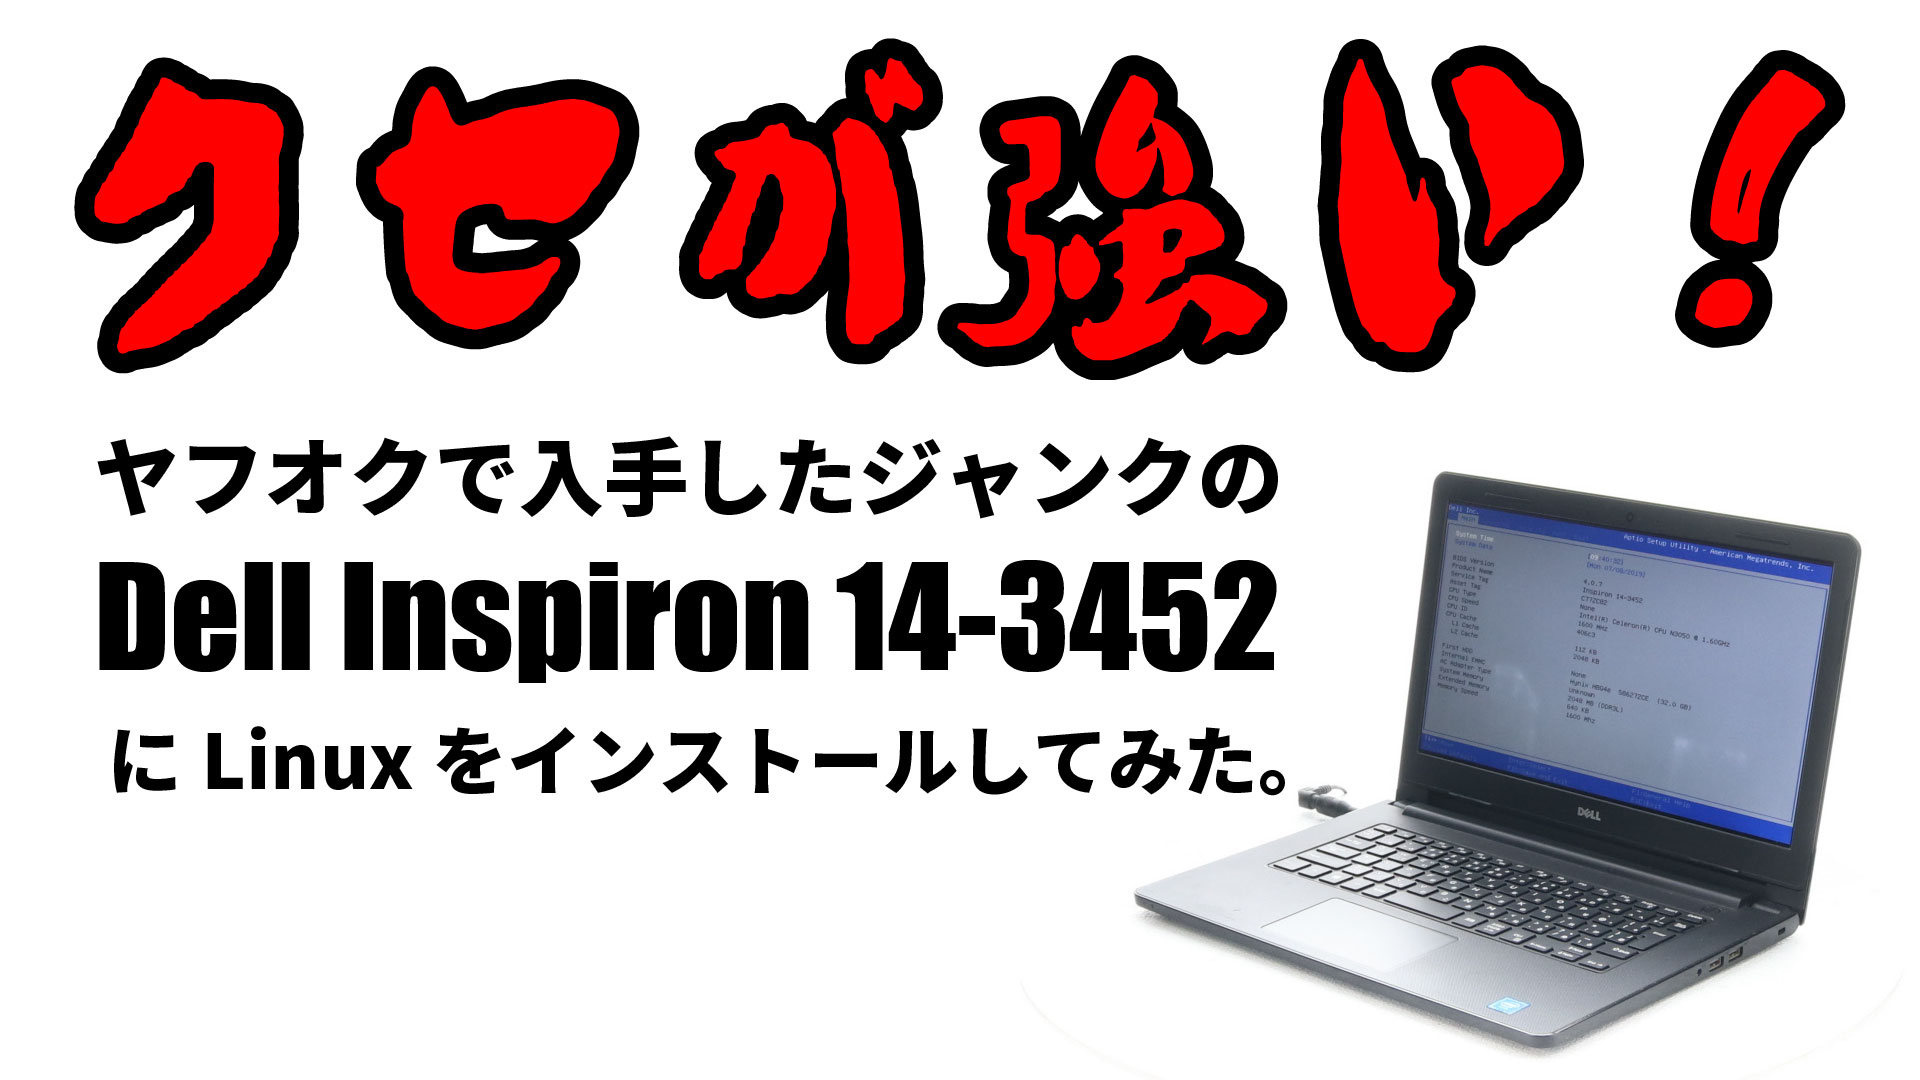 クセが強いジャンクの Dell Inspiron 14-3452 へ Linux をインストールしてみた。